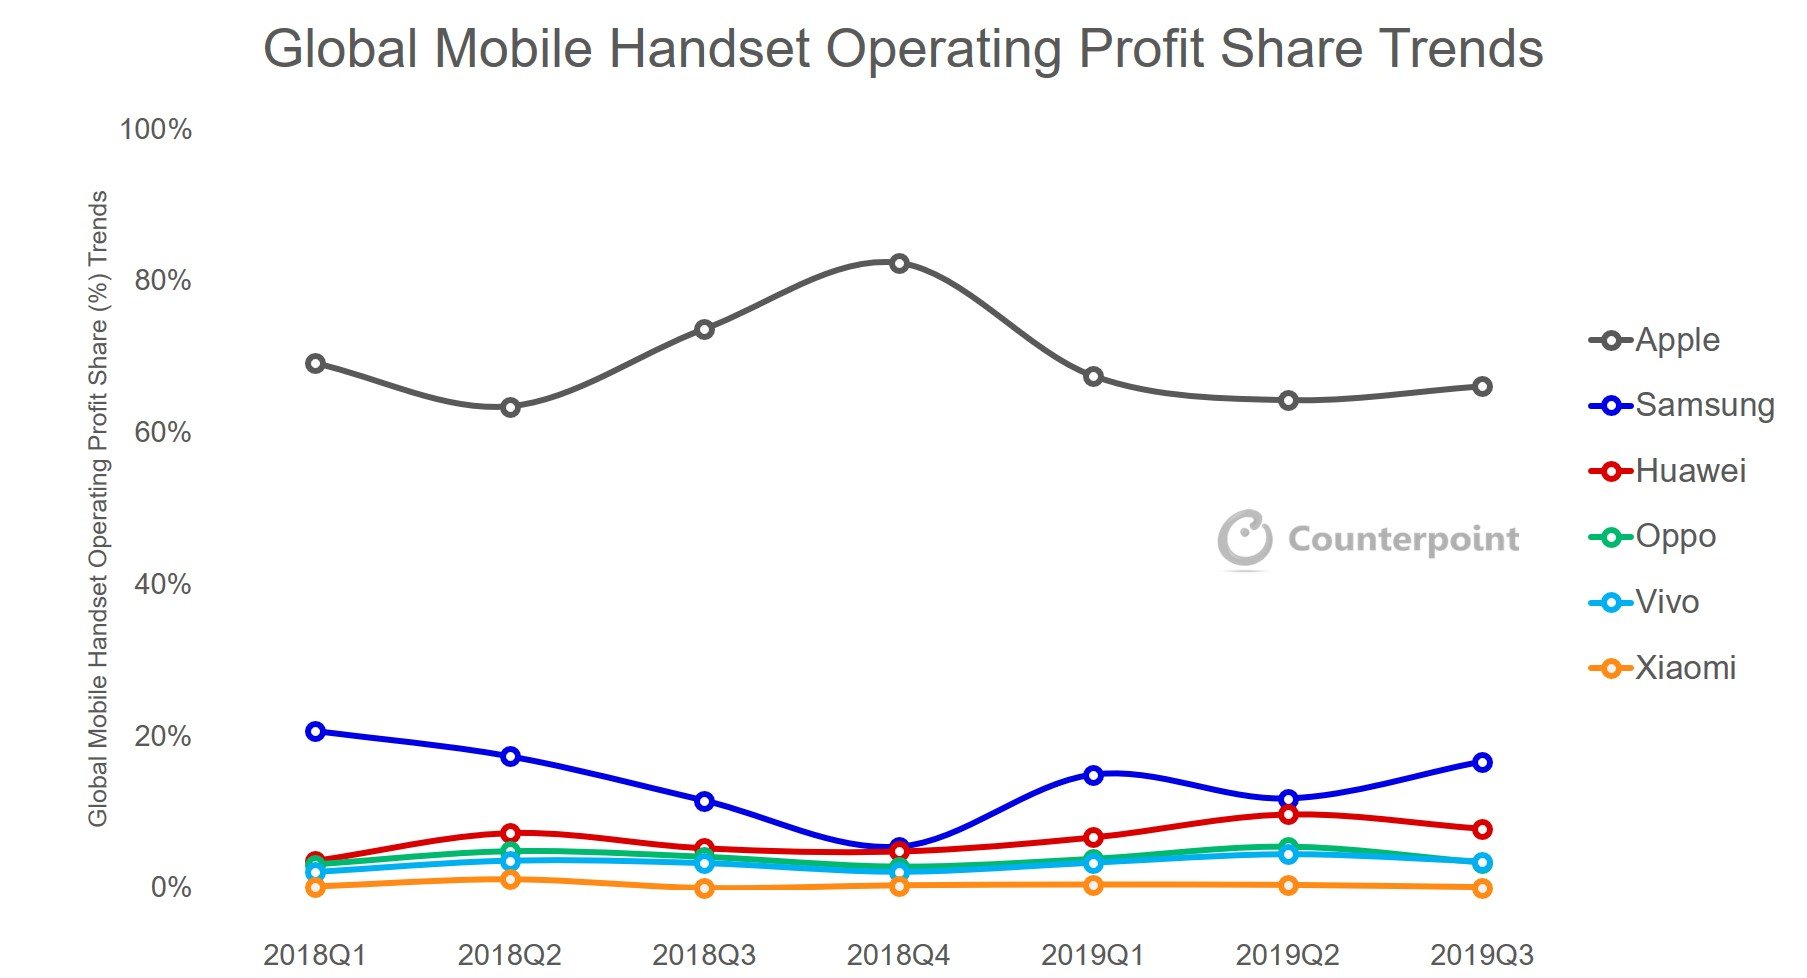 iPhone chiếm tới 66%
lợi nhuận của cả thị trường smartphone toàn cầu